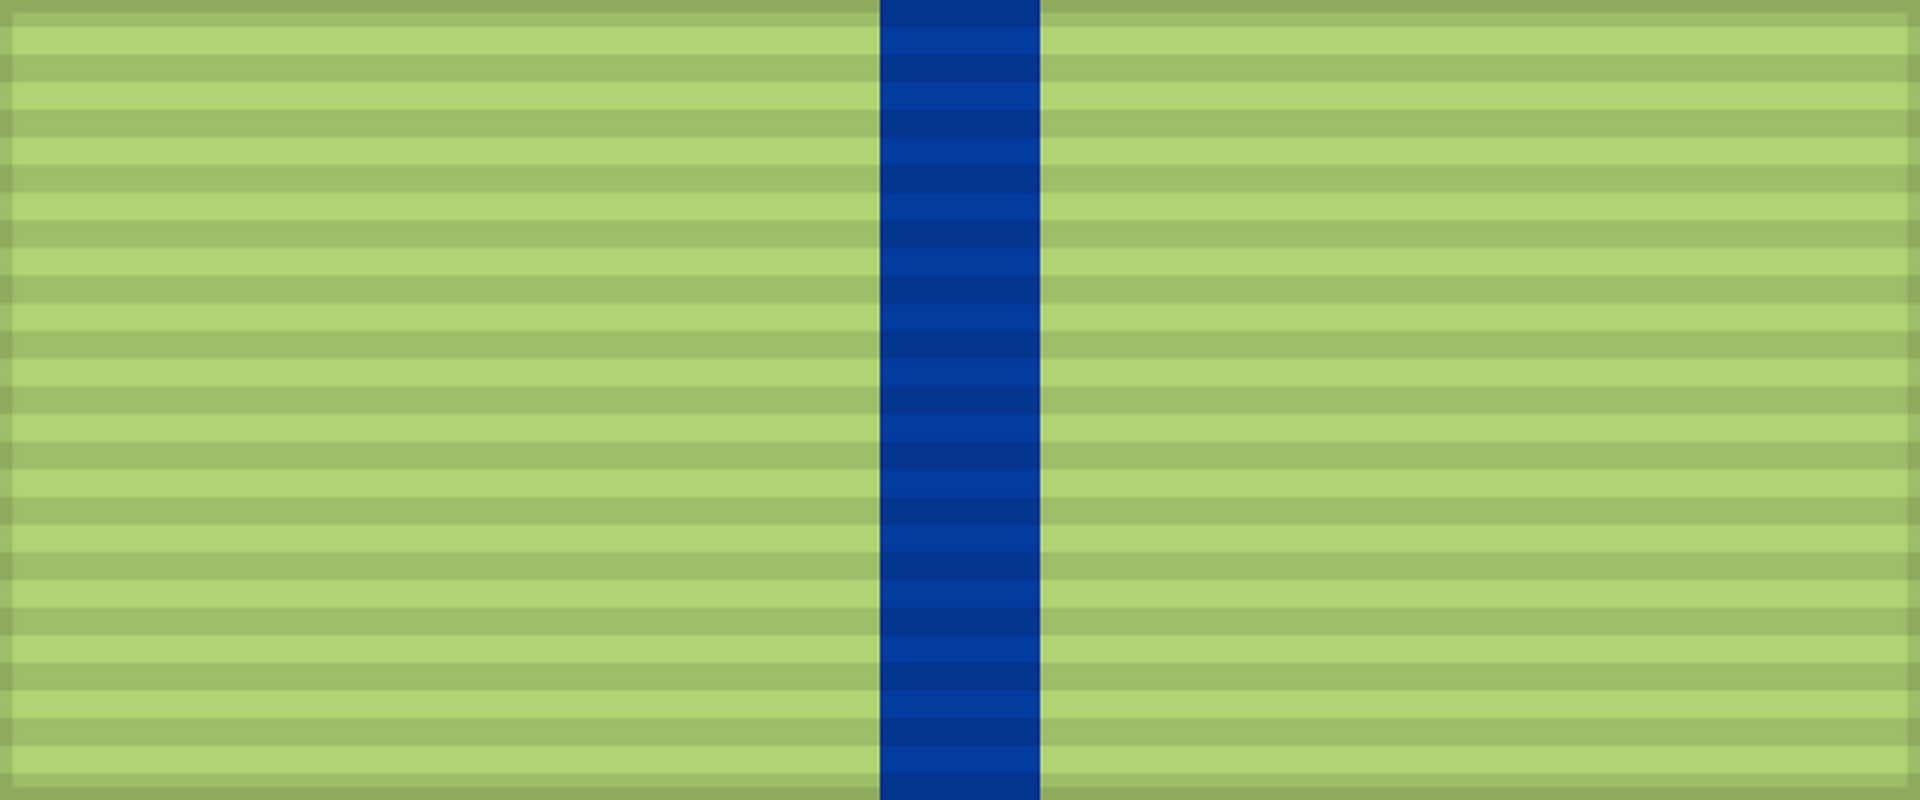 Лента медали «Партизану Отечественной войны» 2-й степени